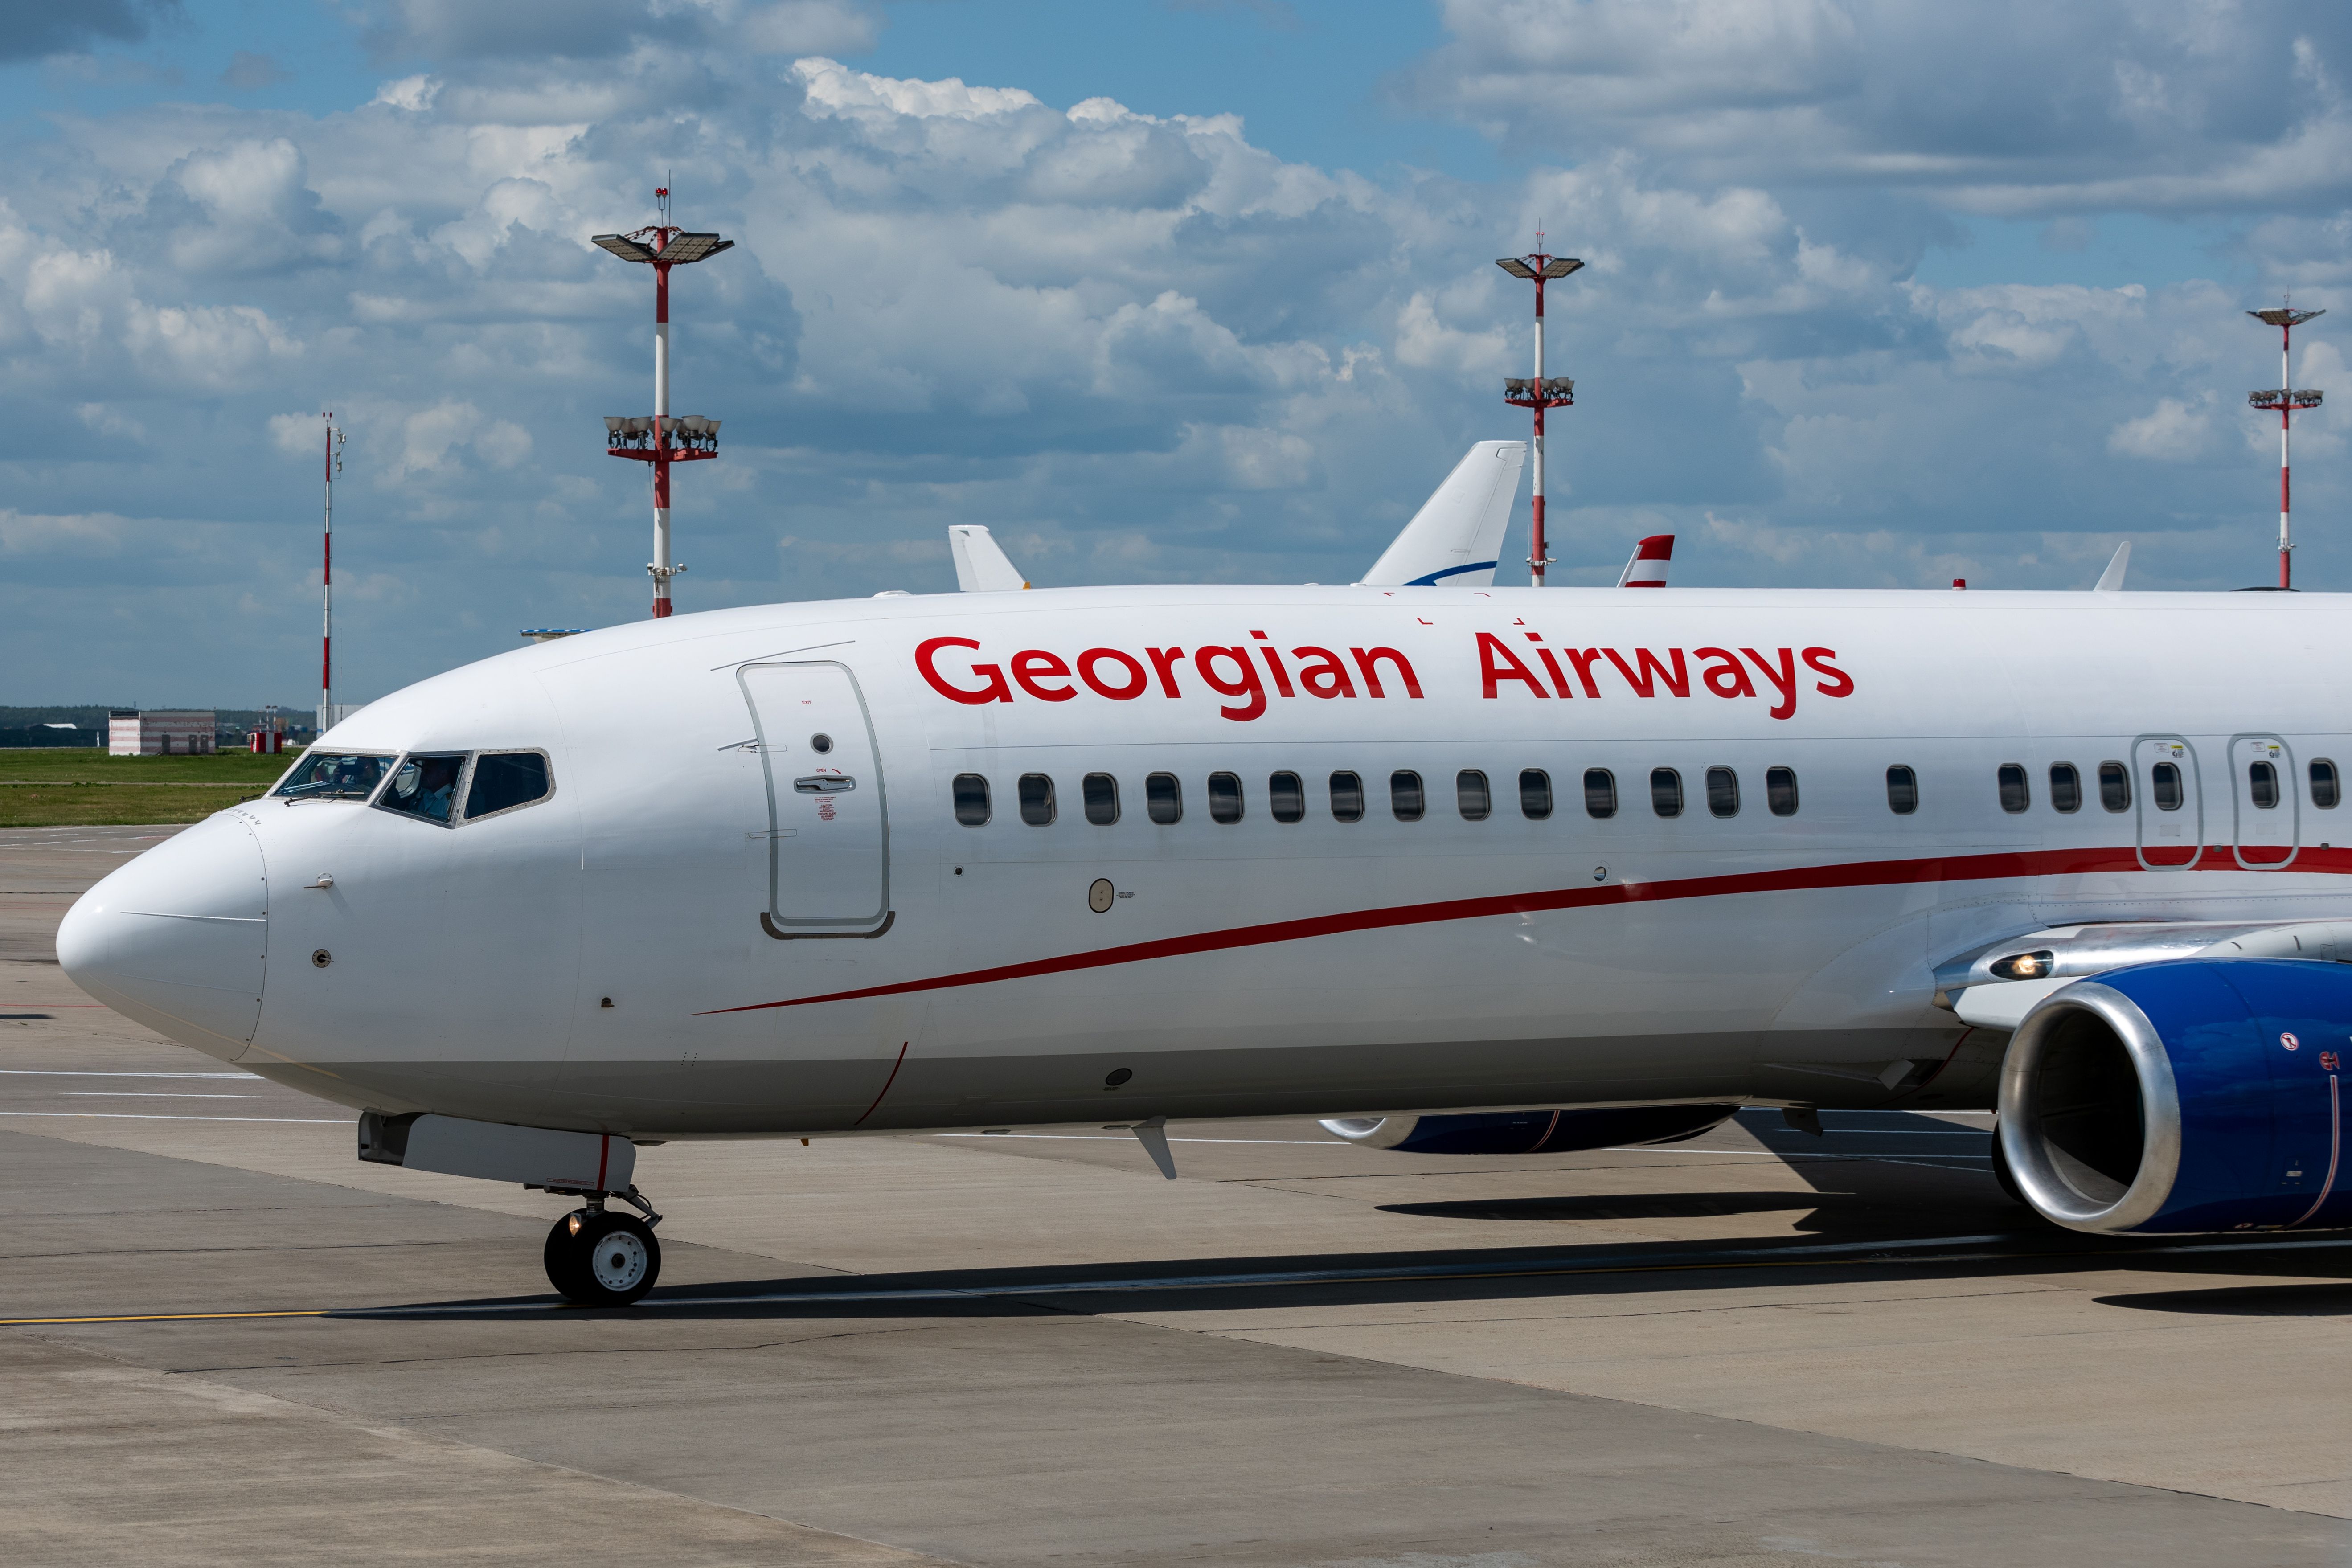 A Georgian Airways plane